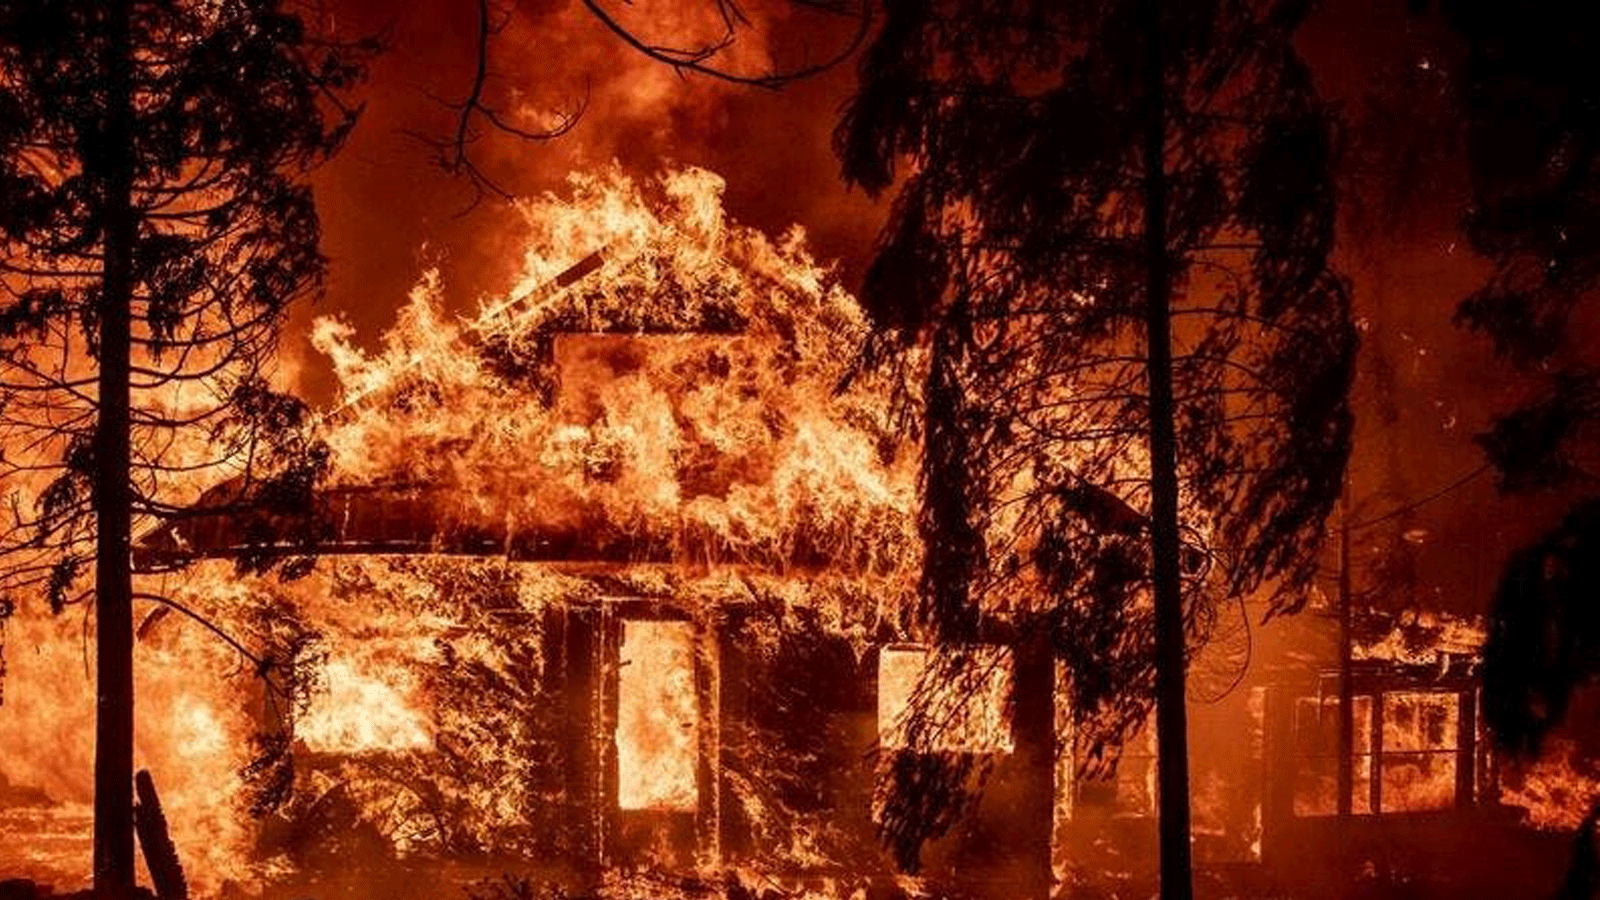 منزل طاله حريق ديكسي في حي إنديان فولز في مقاطعة بلوماس، كاليفورنيا. بتاريخ 24 تموز/ يوليو2021 